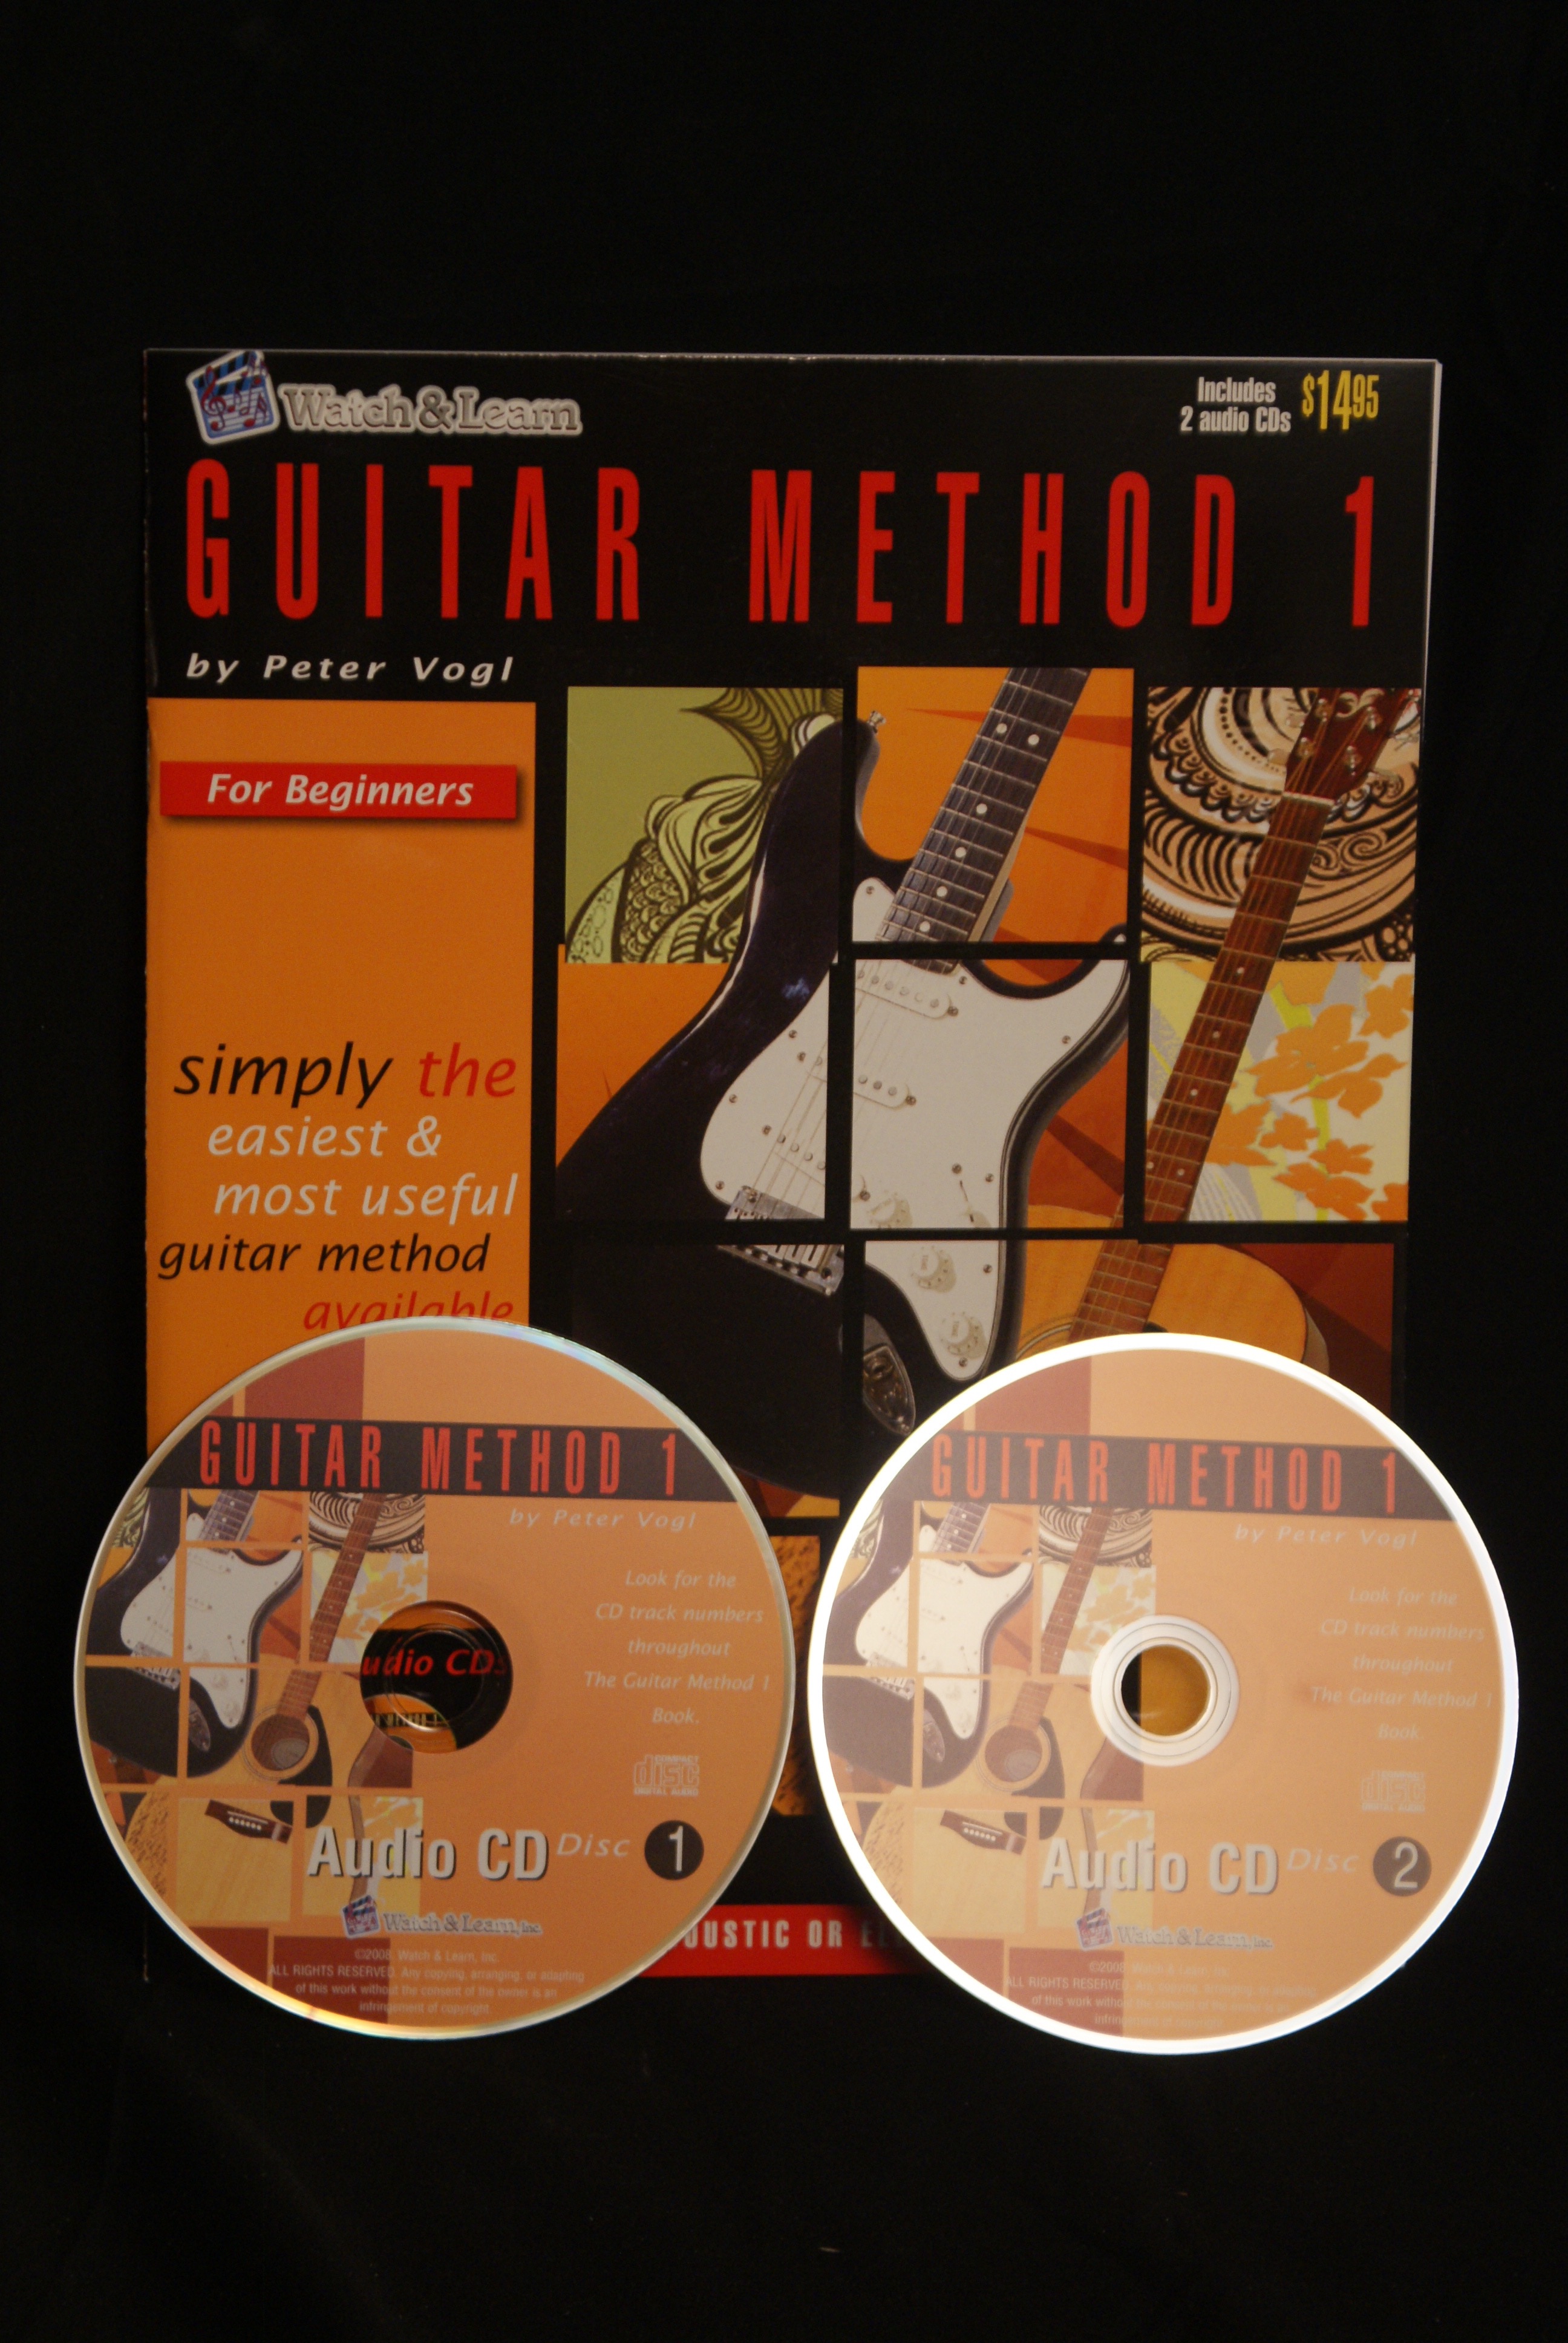 Guitar Method 1